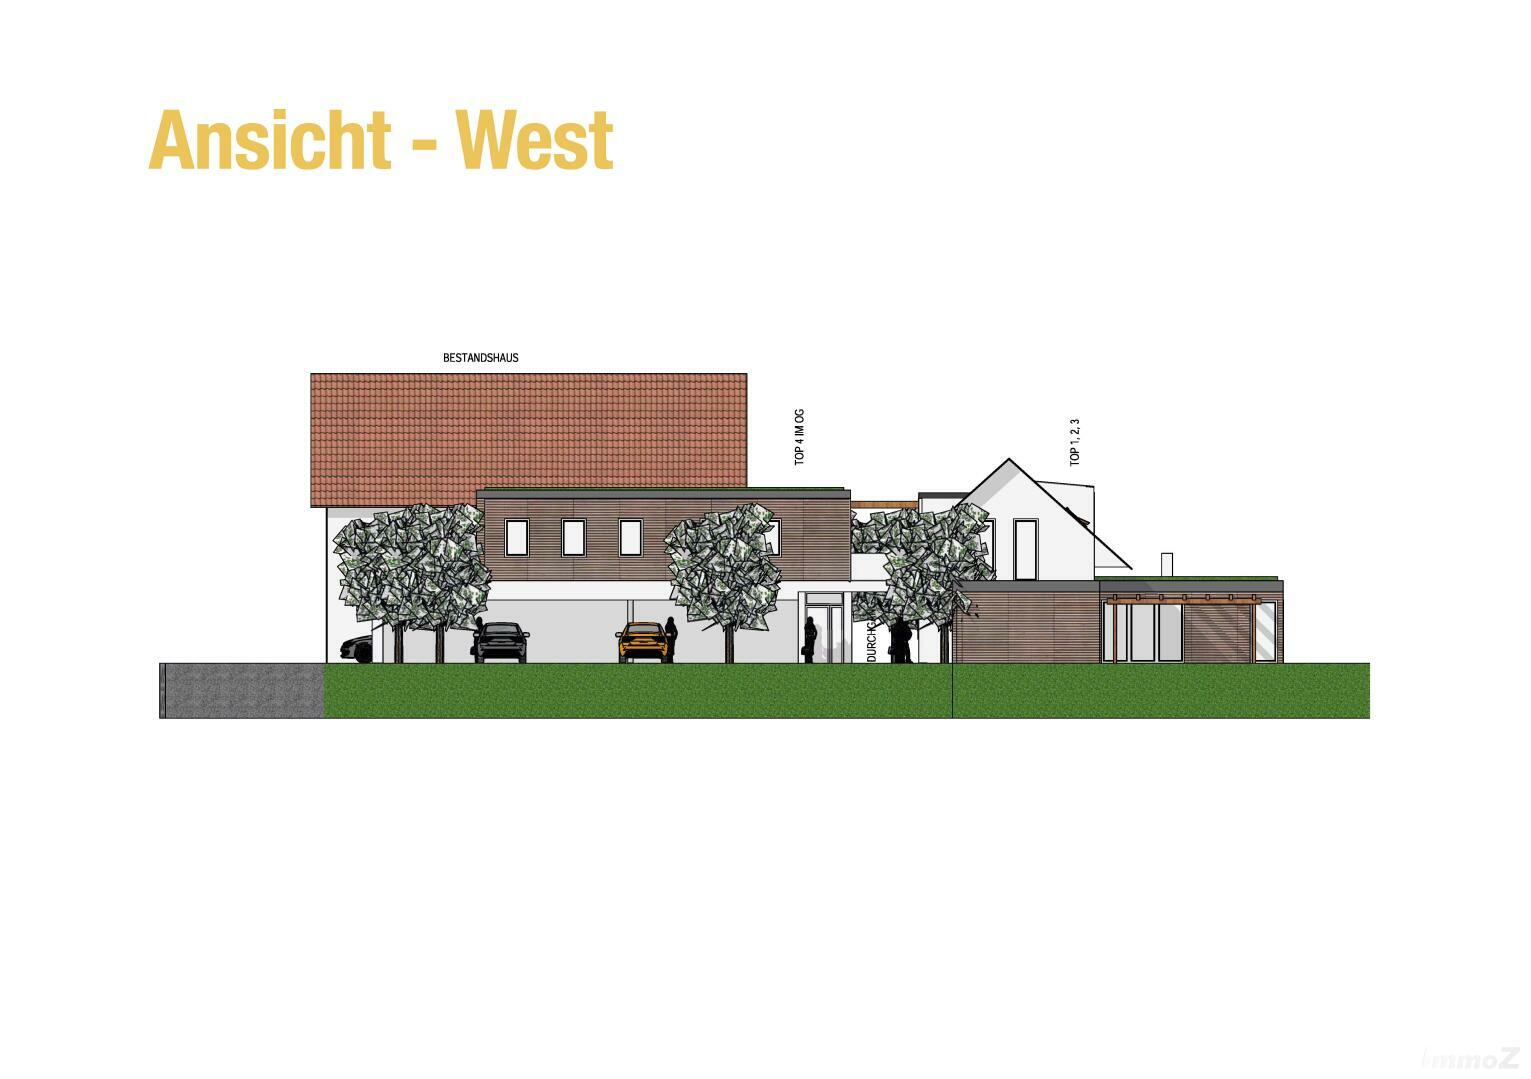 Haus zu kaufen: Ebenholzstraße 24, 8062 Gschwendt - Projekt Ansicht West